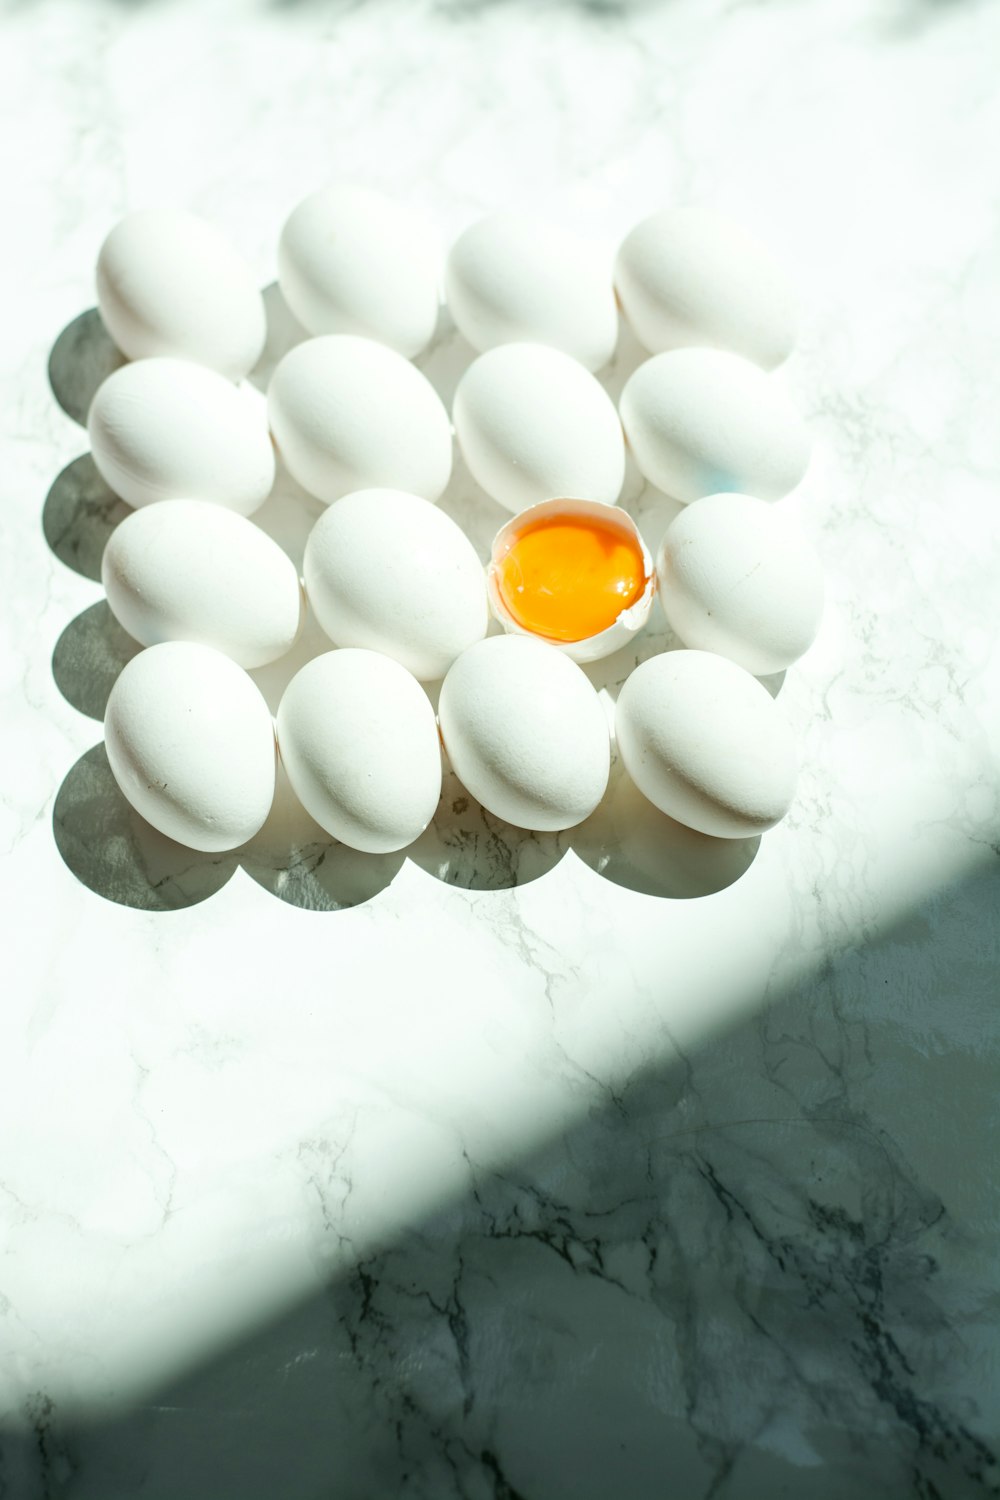 ovos brancos na superfície branca